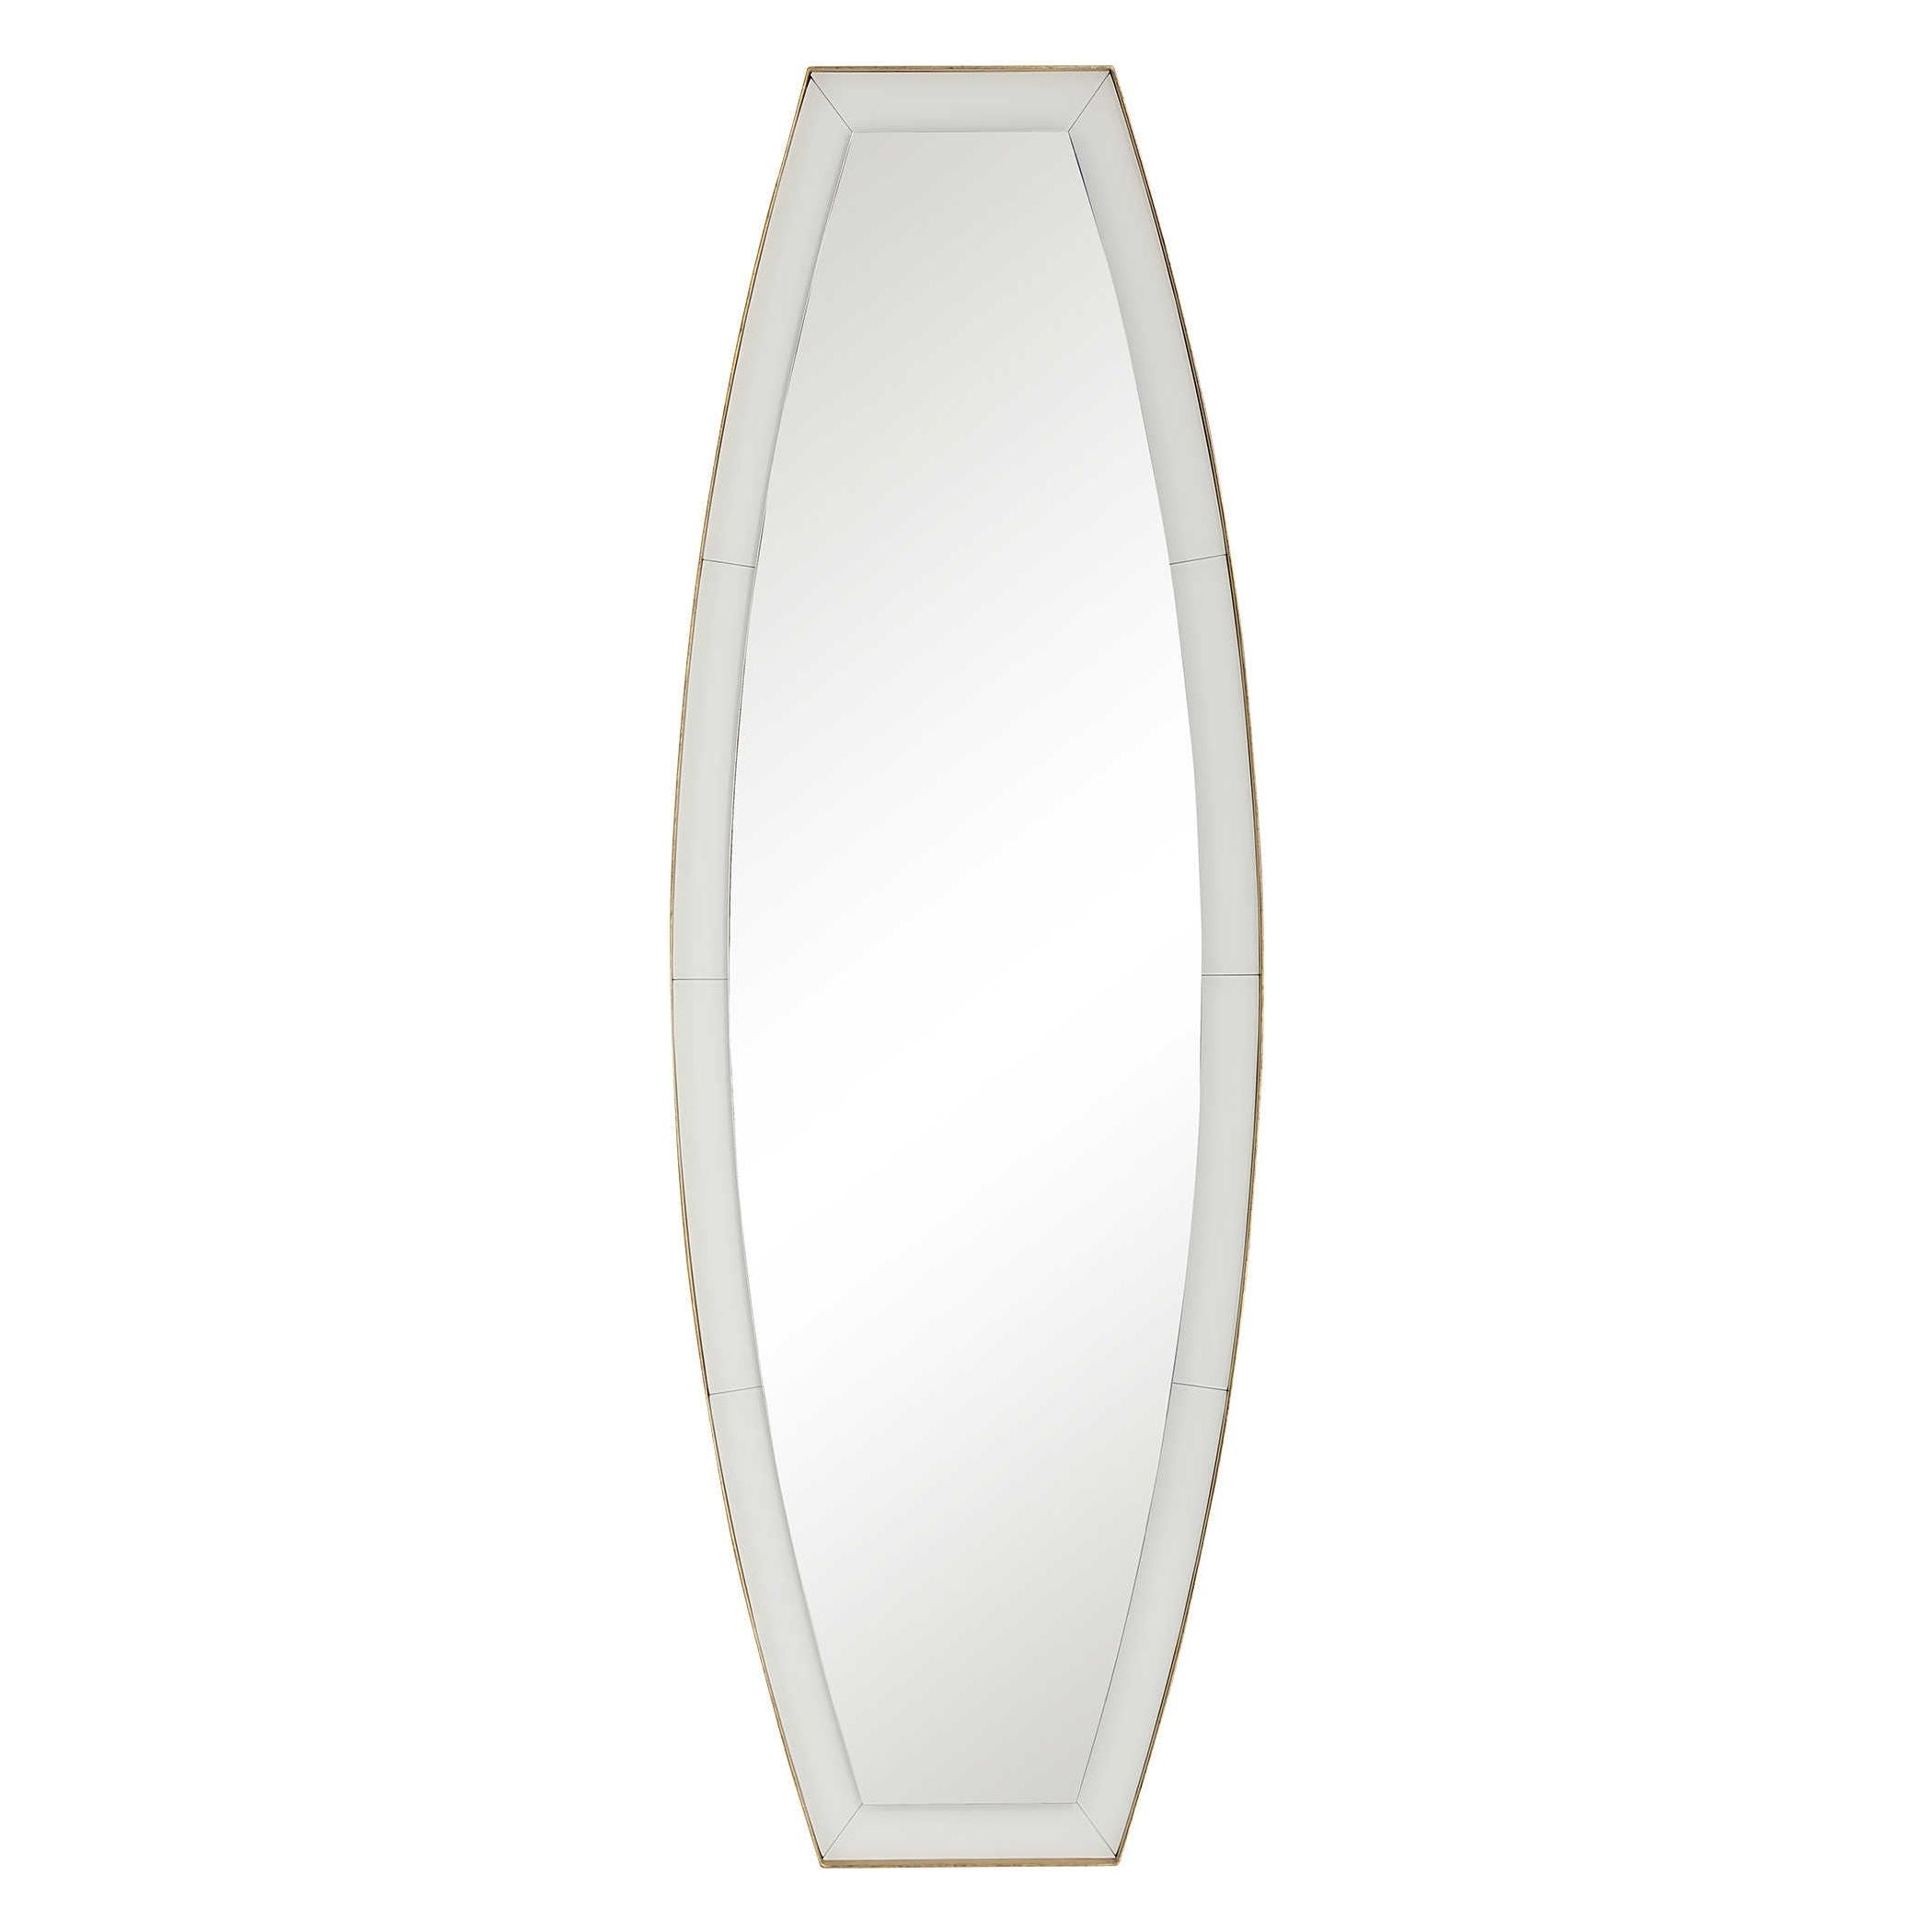 Espejo Ovalado - Monnry